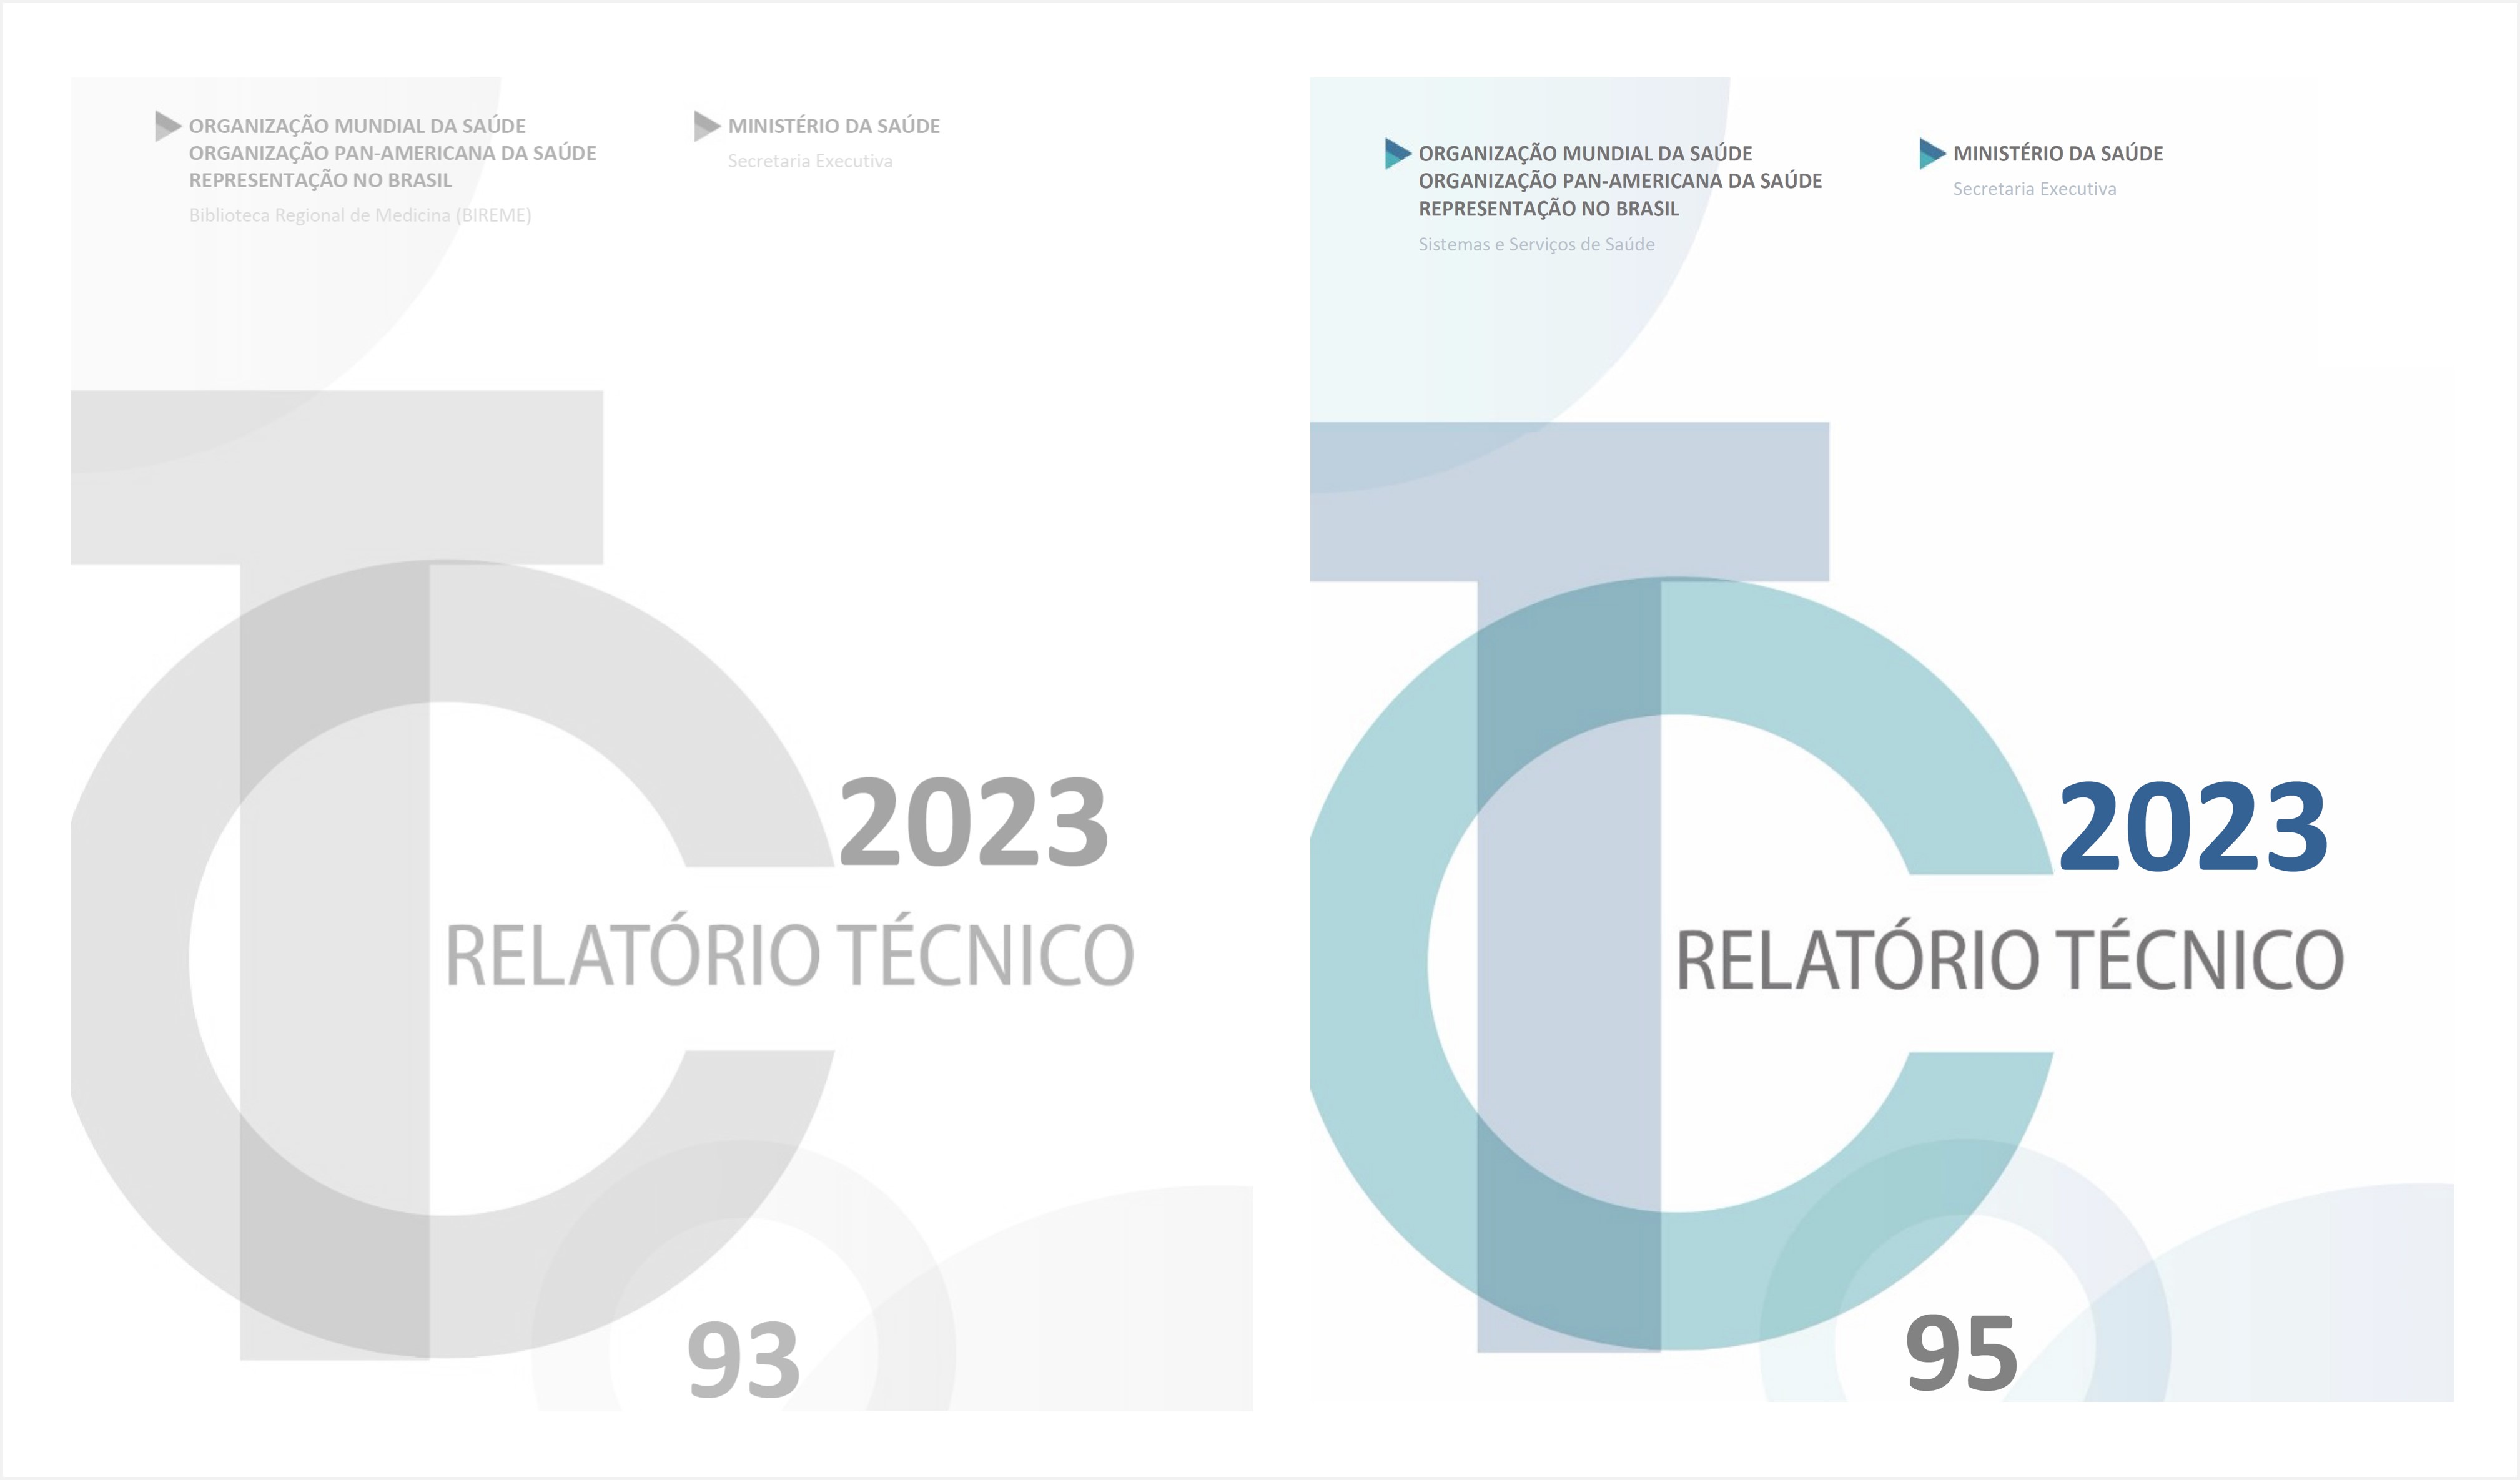 bireme-presenta-los-resultados-2023-de-los-terminos-de-cooperacion-con-minsal-brasil-parte-ii-tc95